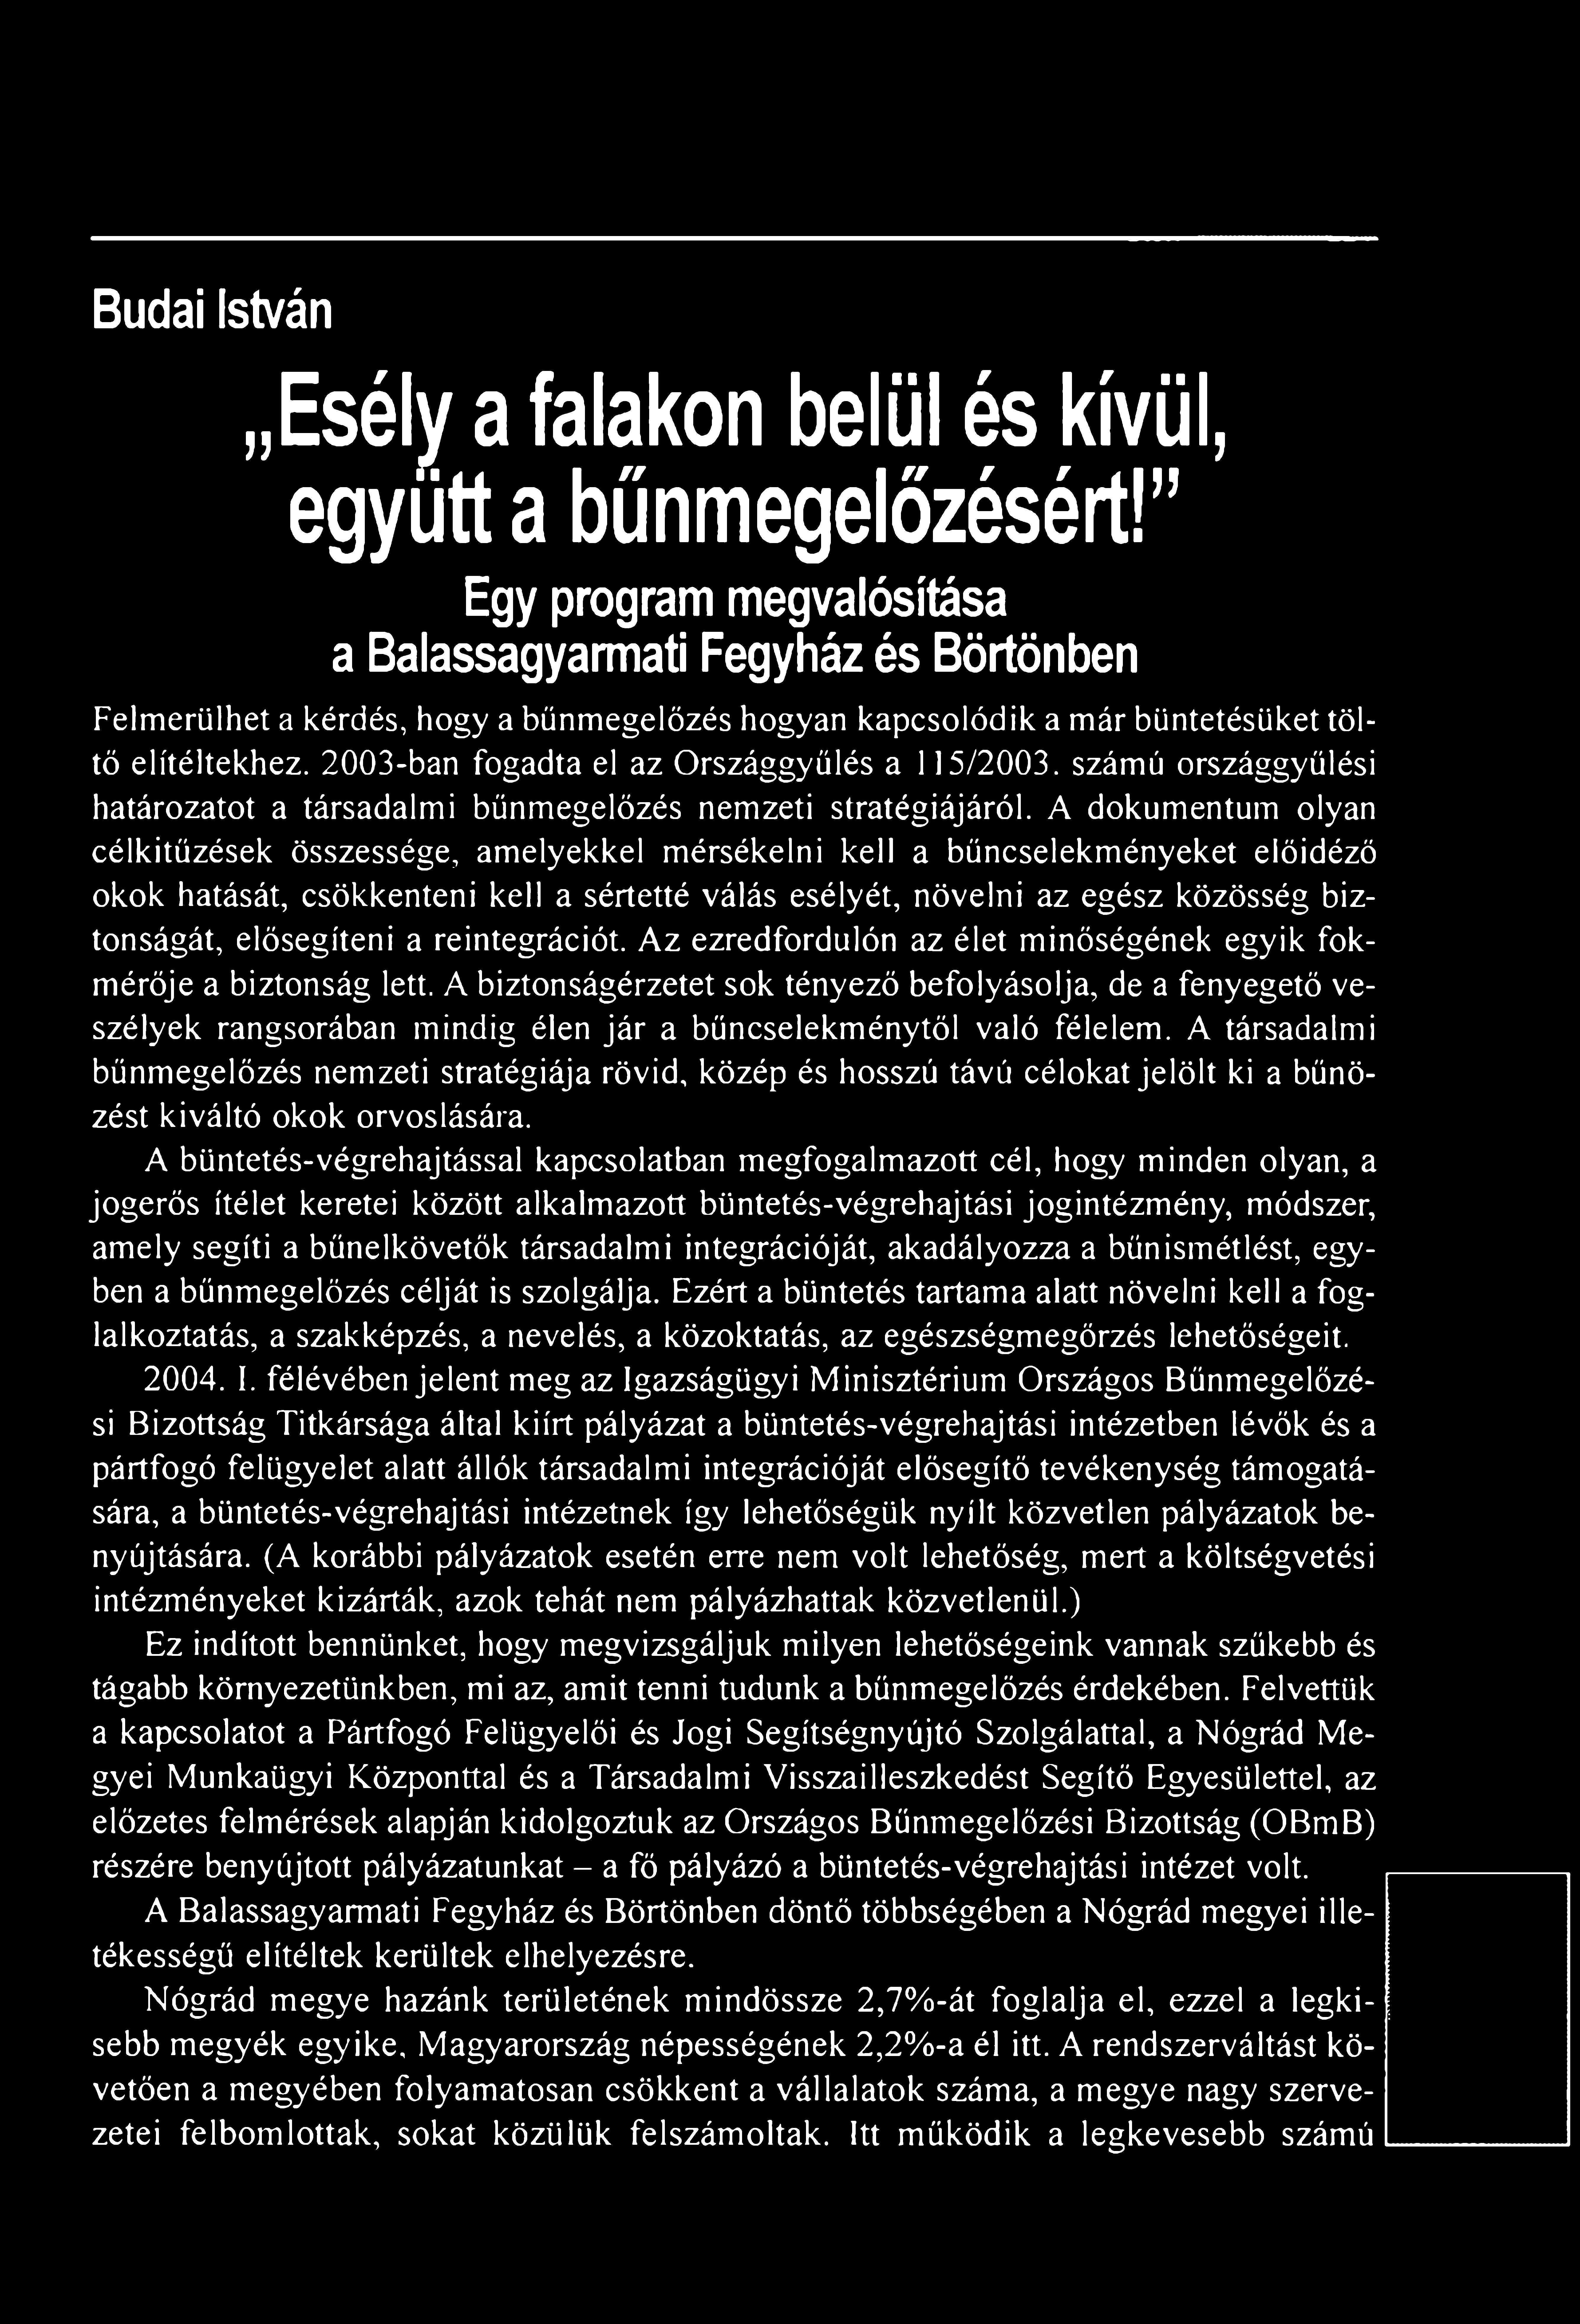 Budai István Esély a falakon belül és kívül, együtt a bűnmegelőzésért!